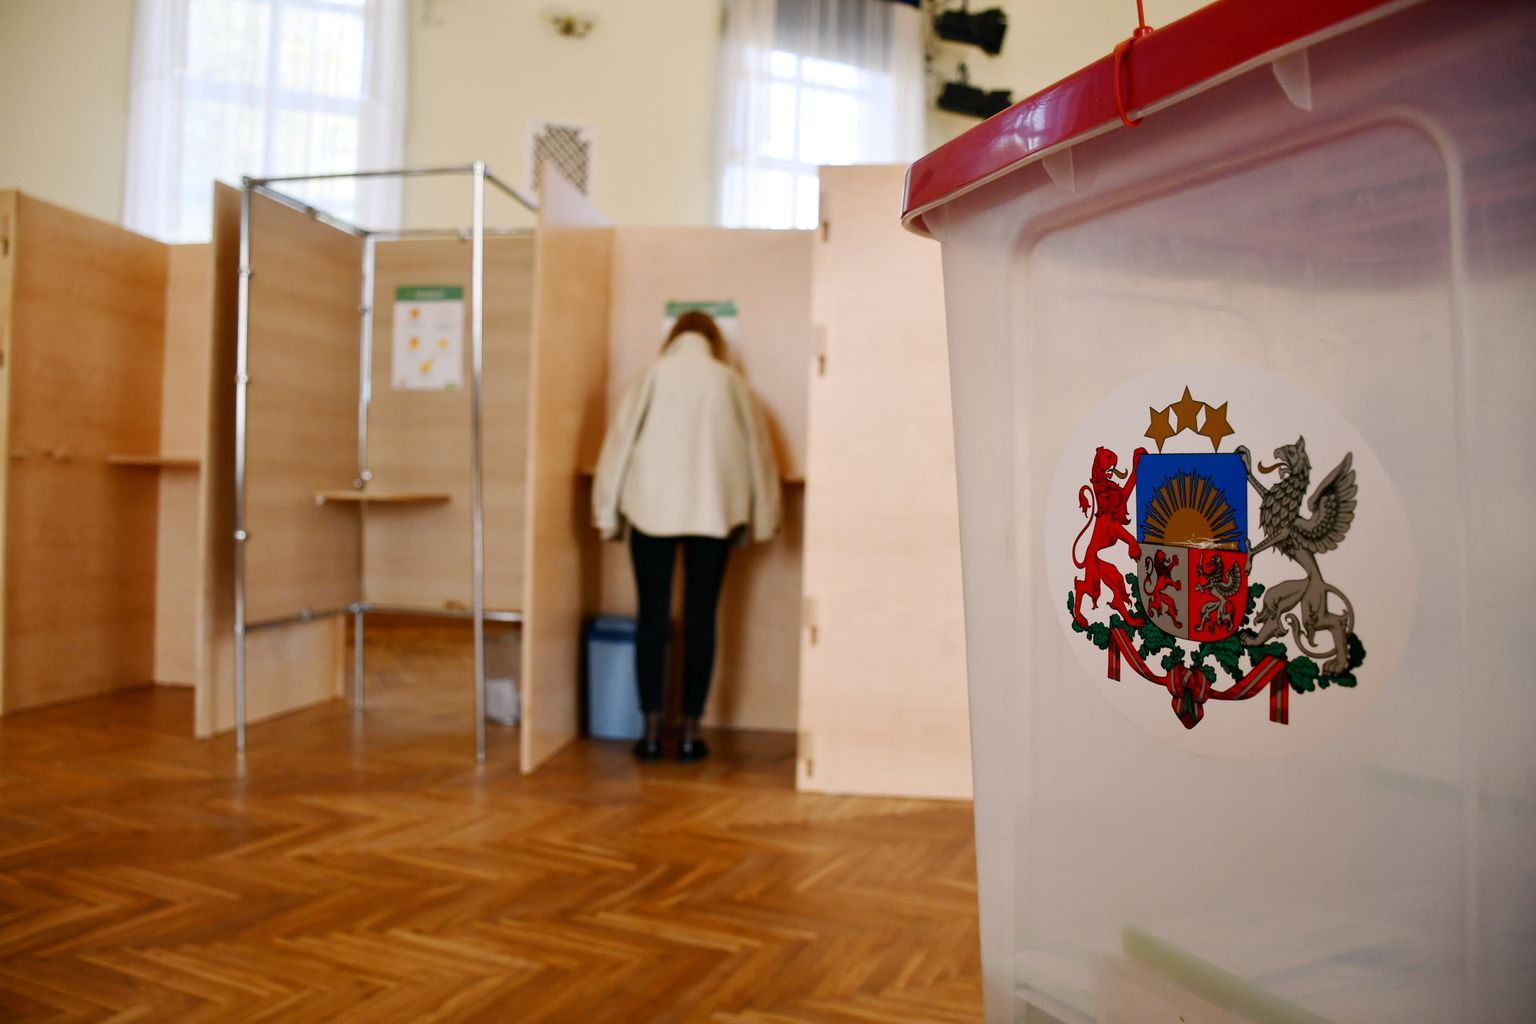 Pašvaldības vēlēšanas 729. vēlēšanu iecirknī Viļānu kultūras namā. Ilustratīvs attēls.